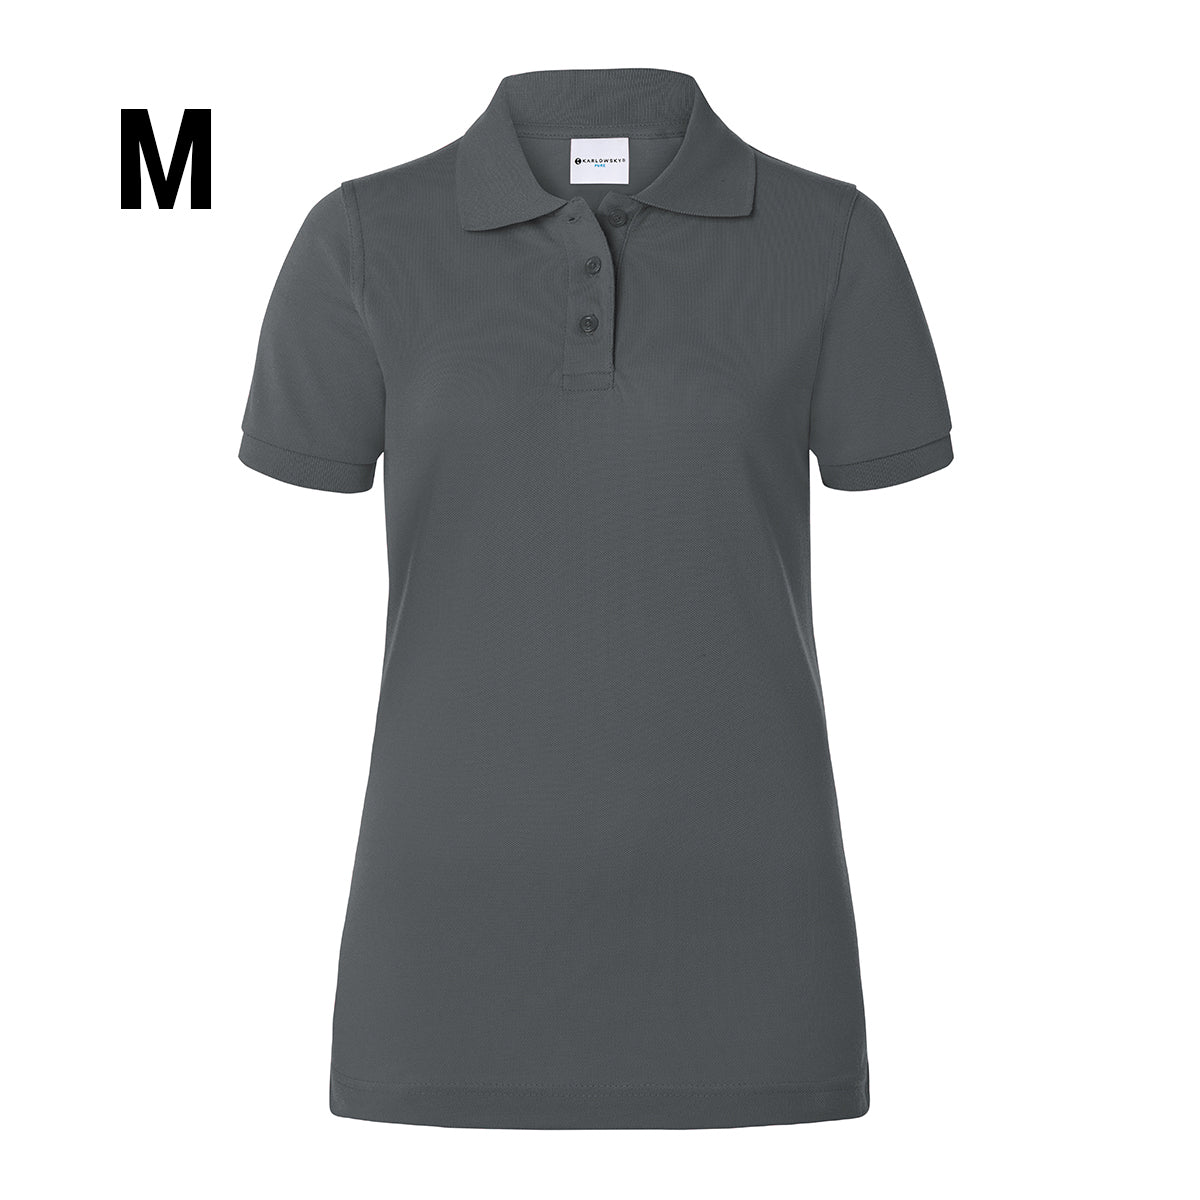 Karlowsky - Arbeidstøy Poloskjorte for kvinner Basic - Antrasitt - Størrelse: M